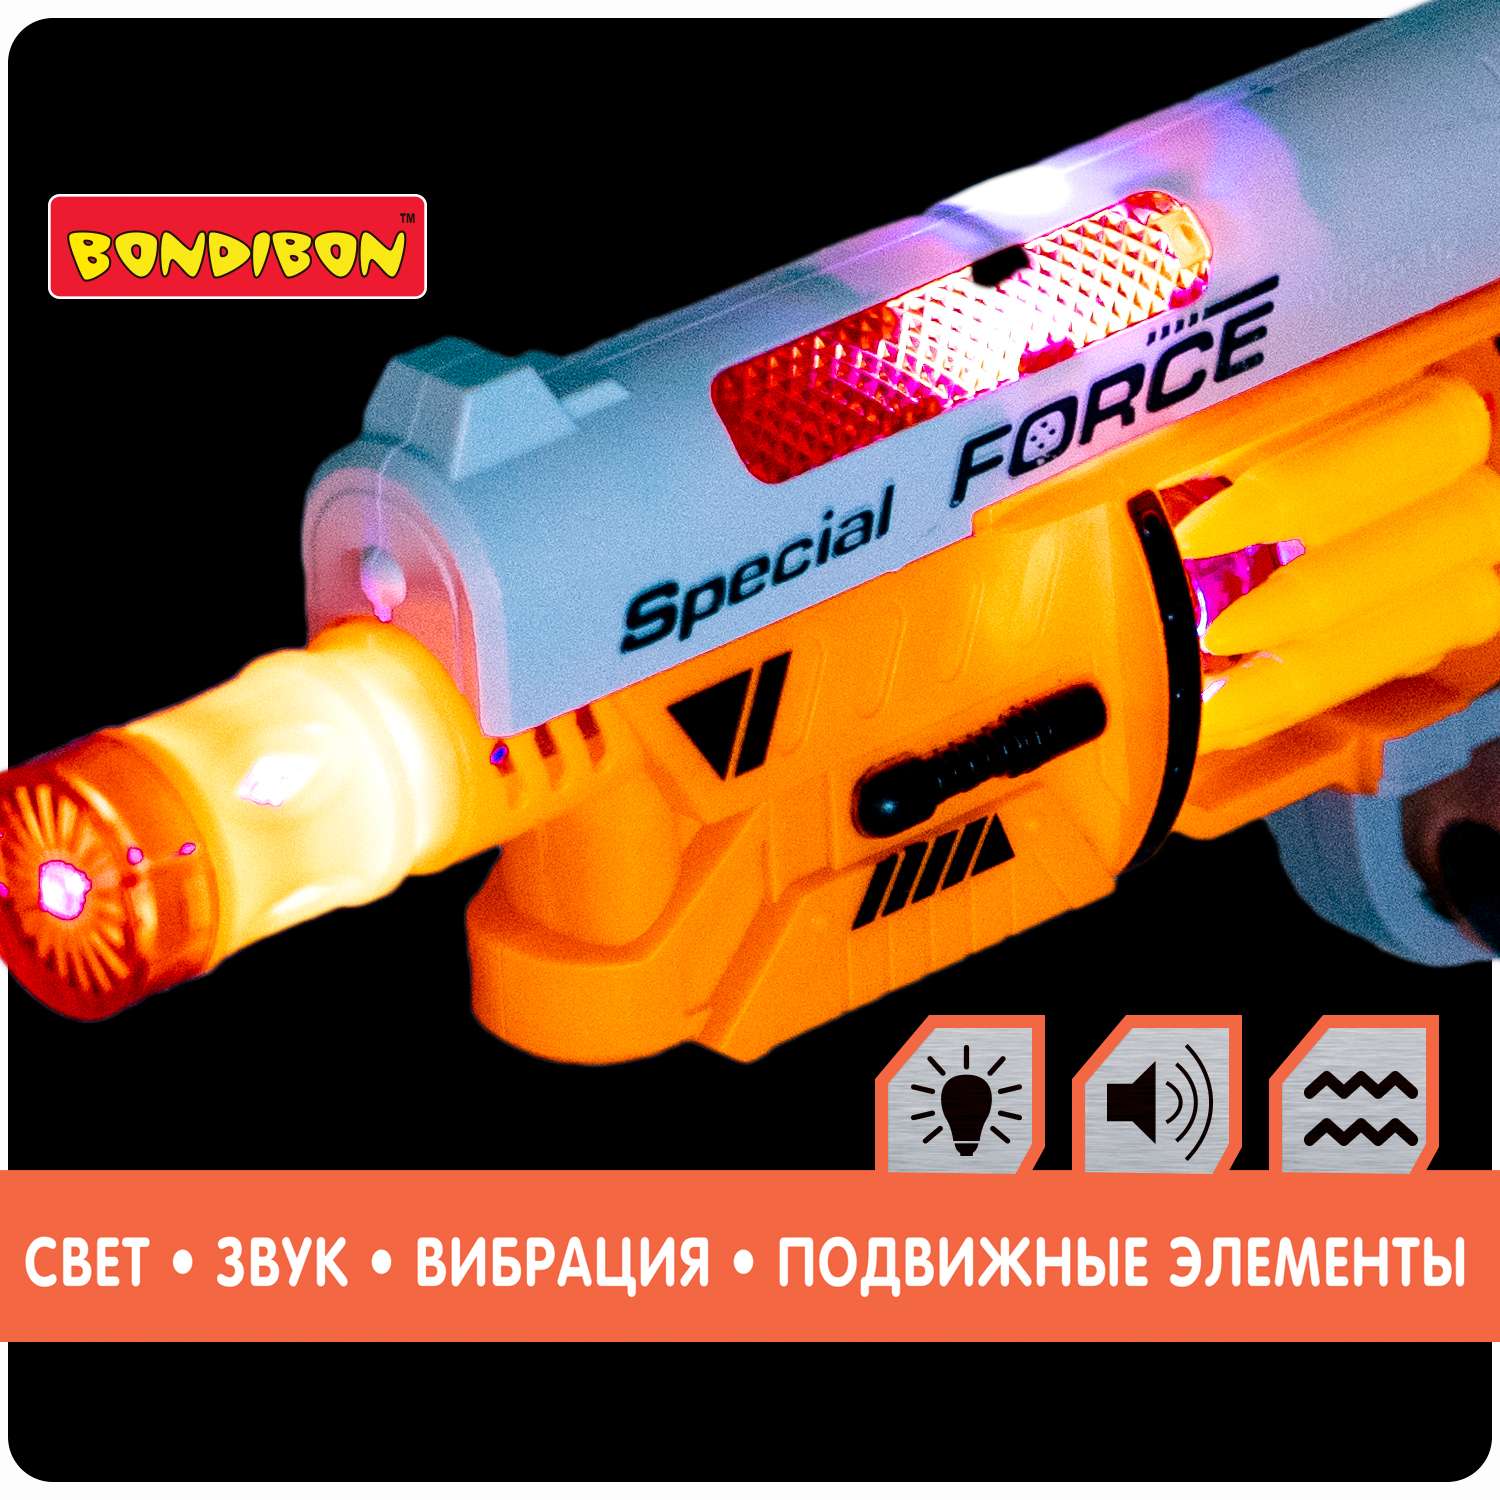 Пистолет BONDIBON Фантастика со свето-звуковым эффектом и подвижными элементами серебристо-оранжевого цвета - фото 7